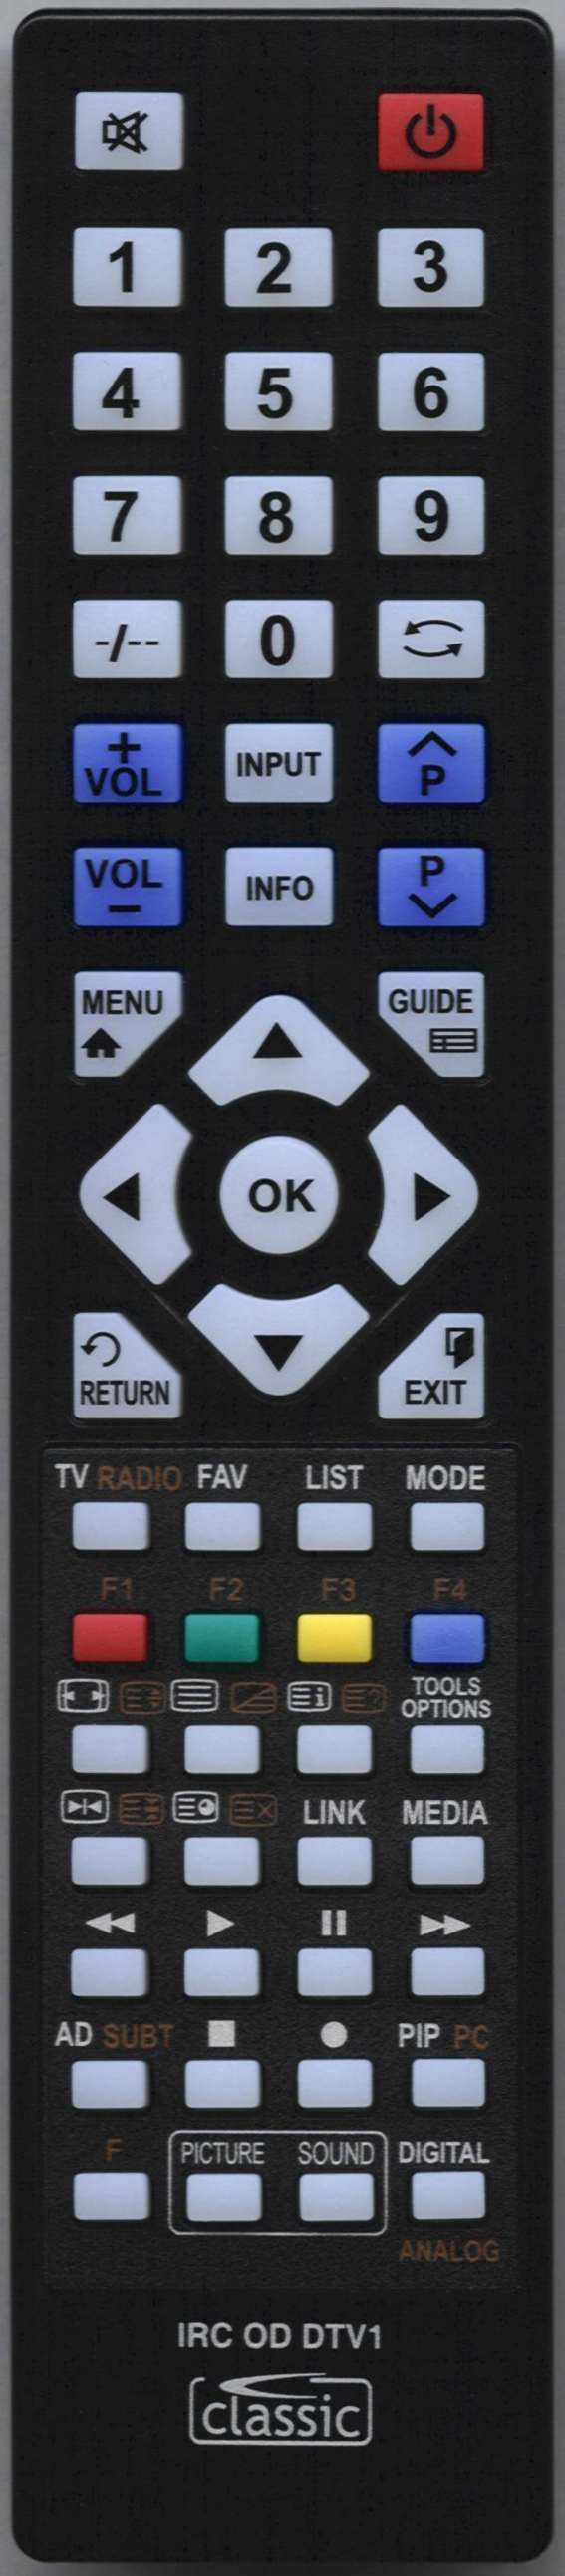 UMC L15F08N01G-786 Remote Control